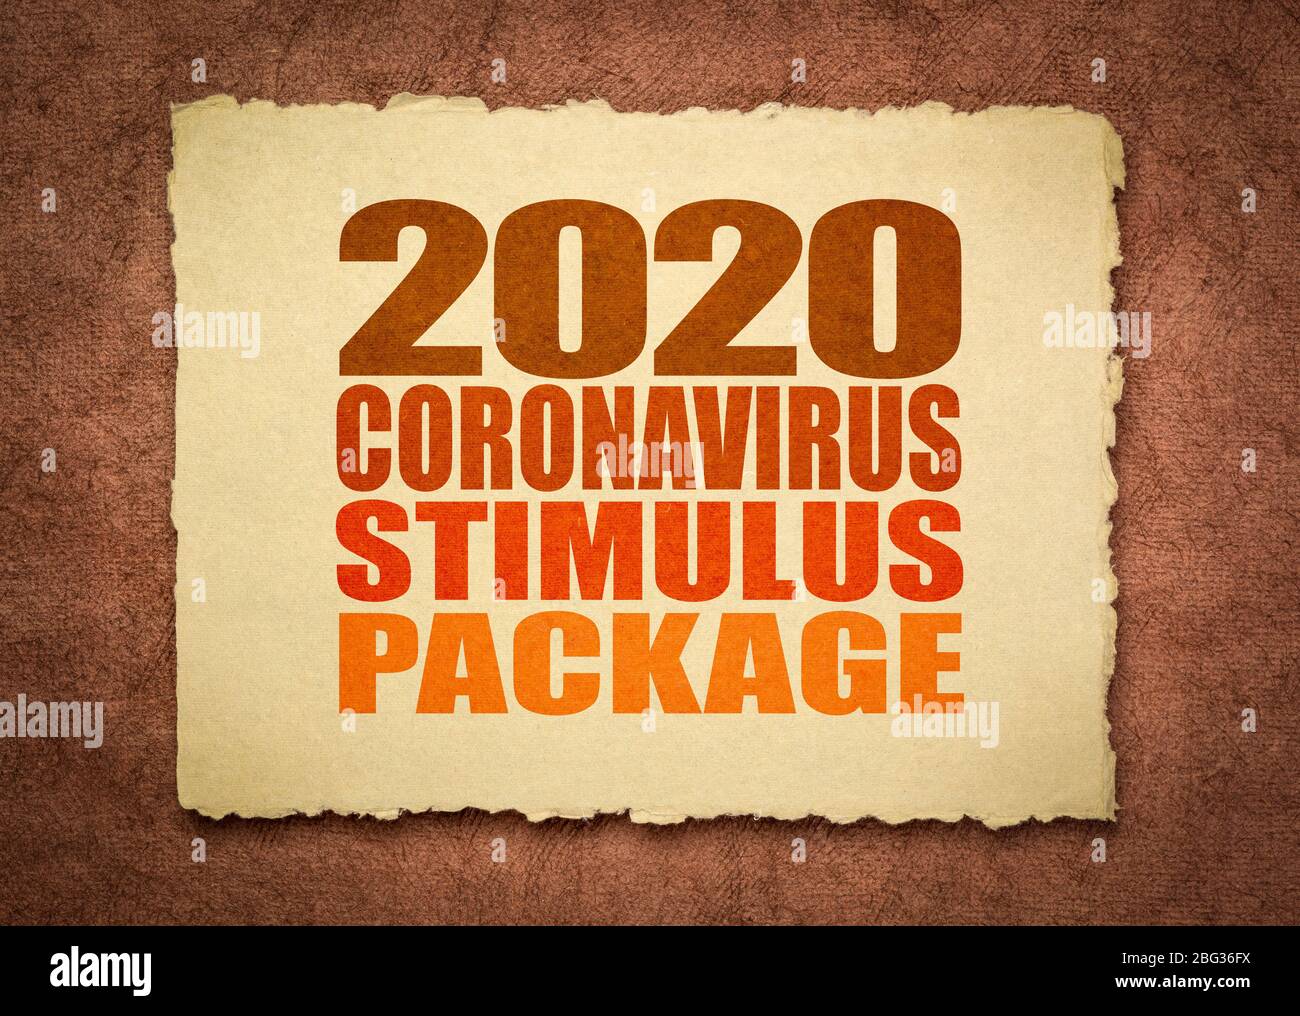 2020 Coronavirus Stimulus Paket Wort Zusammenfassung auf einem handgefertigten Lappen Papier, Relief Rechnung während Covid-19 Pandemie und Rezession Stockfoto